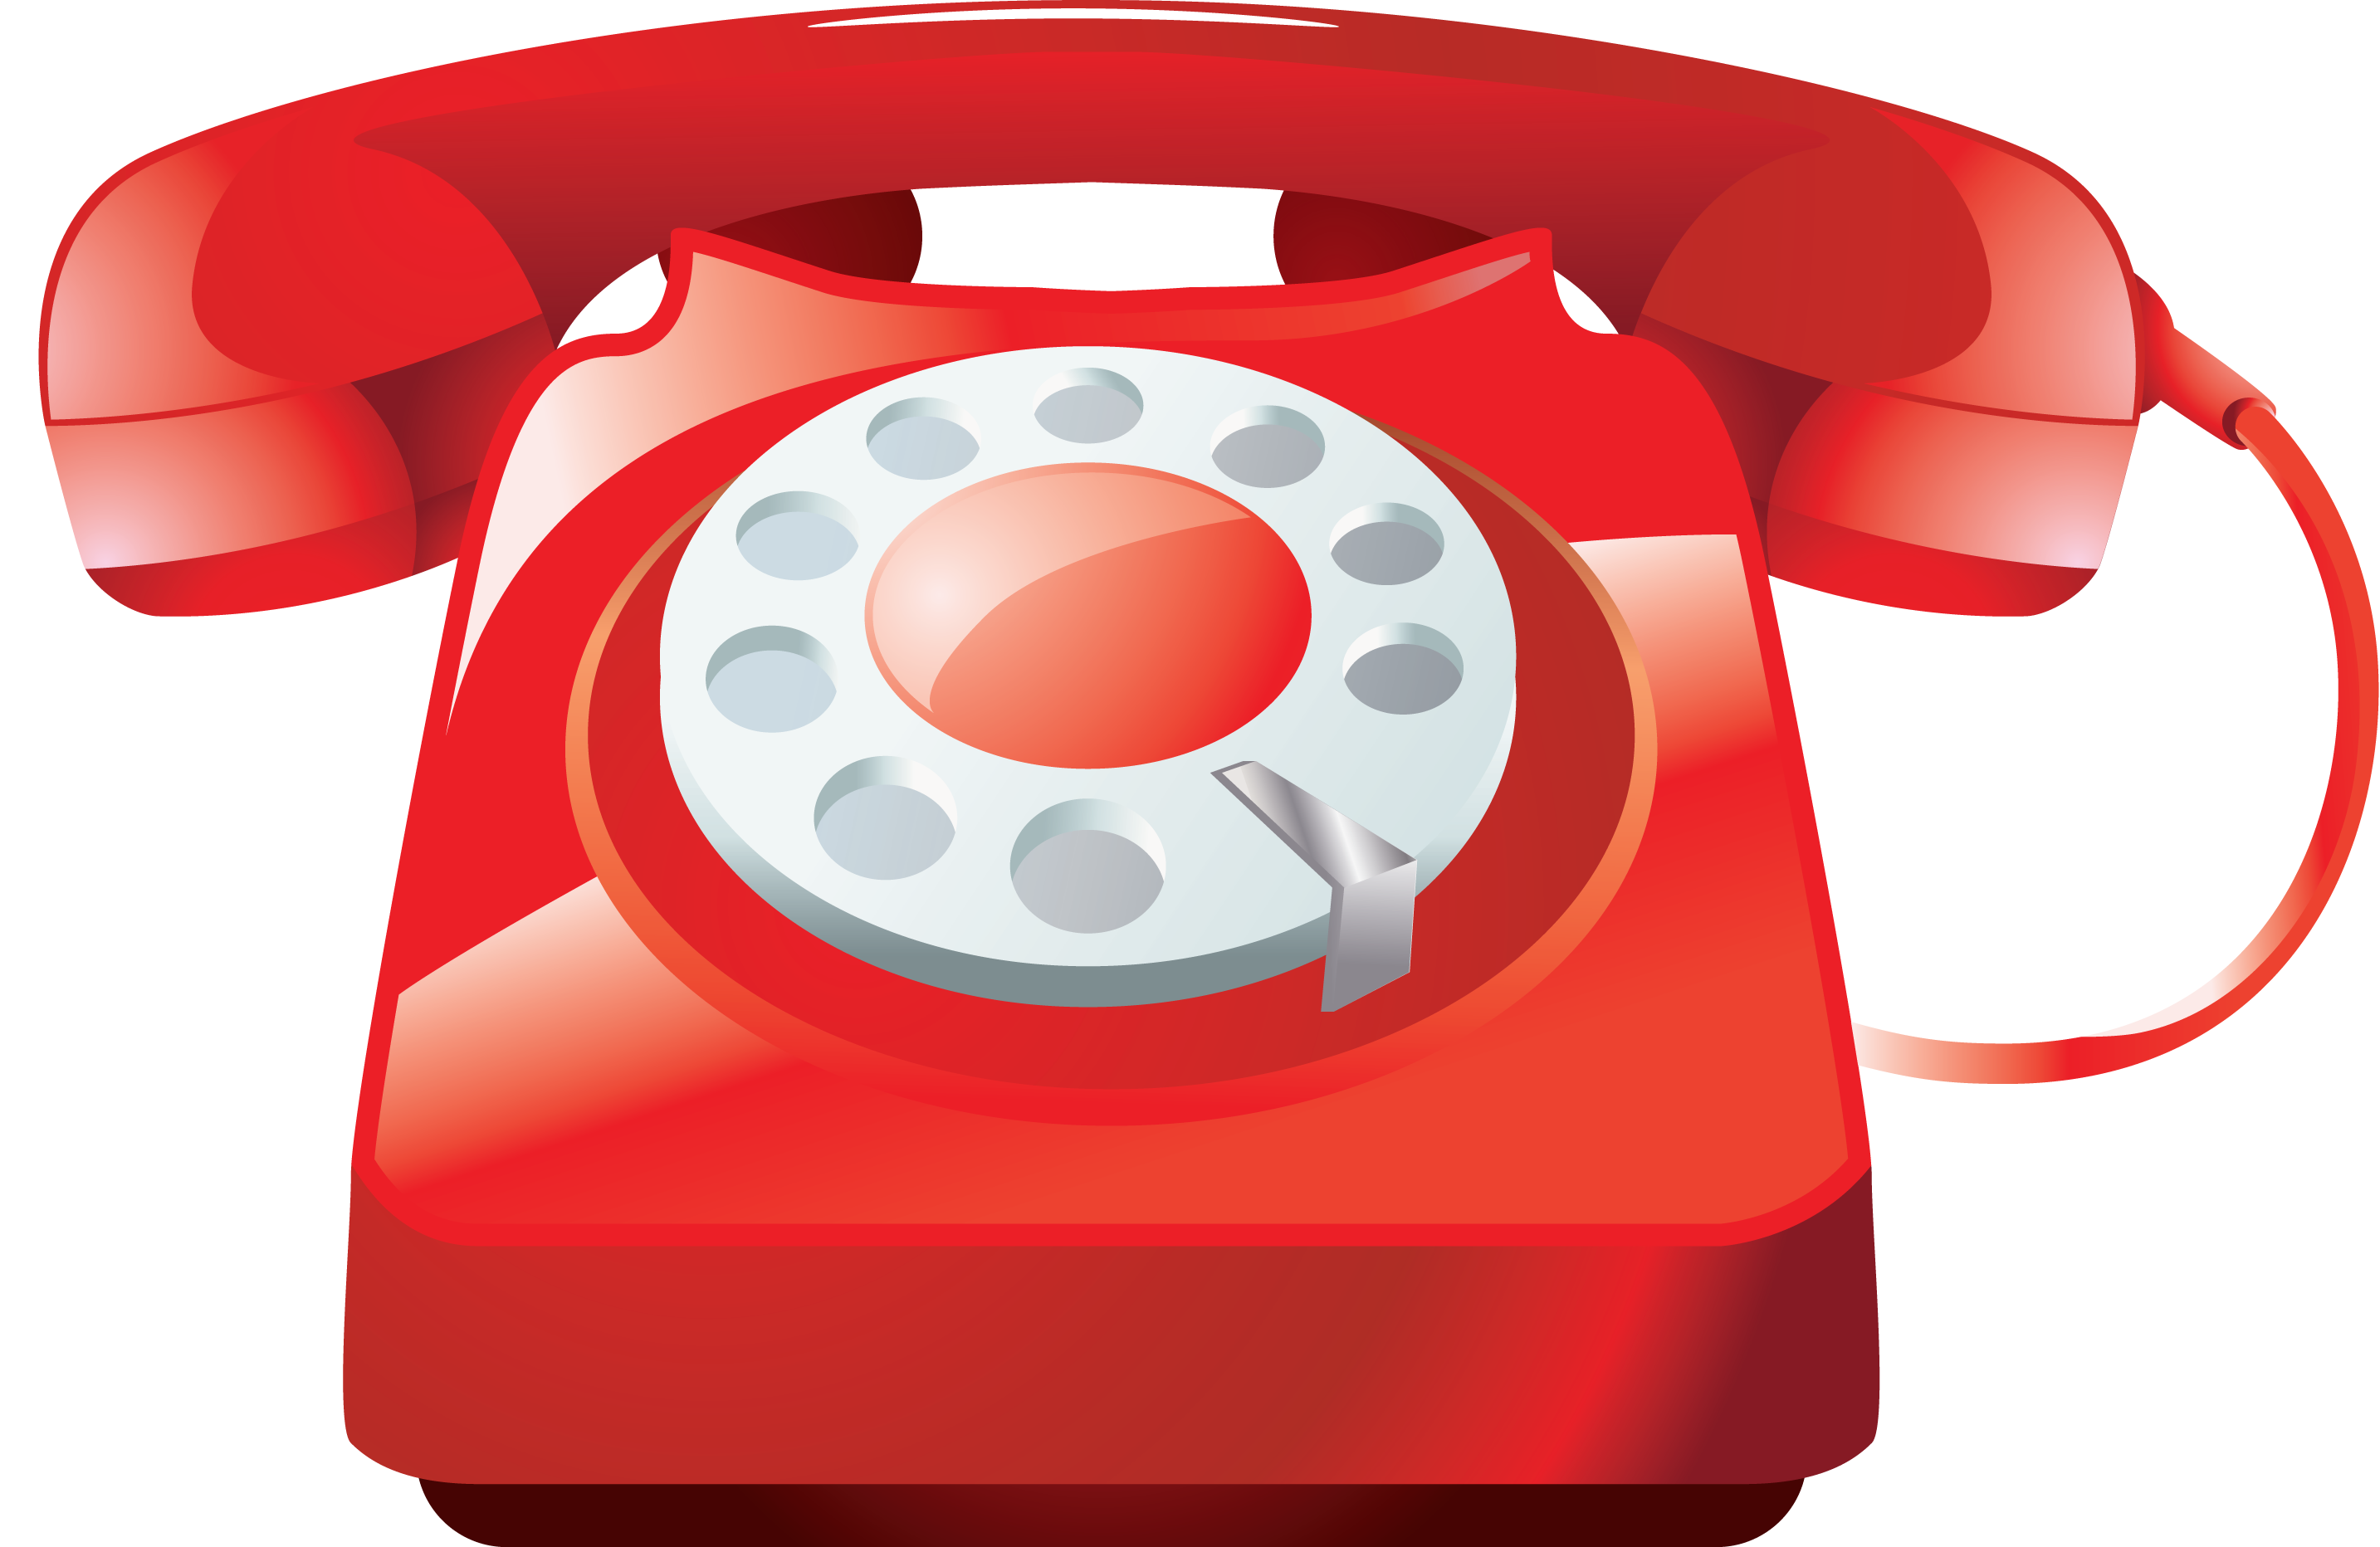 Телефон ринета. Красный телефон. Изображение телефона. Иллюстрации с изображением телефона. Изображение телефона для детей.